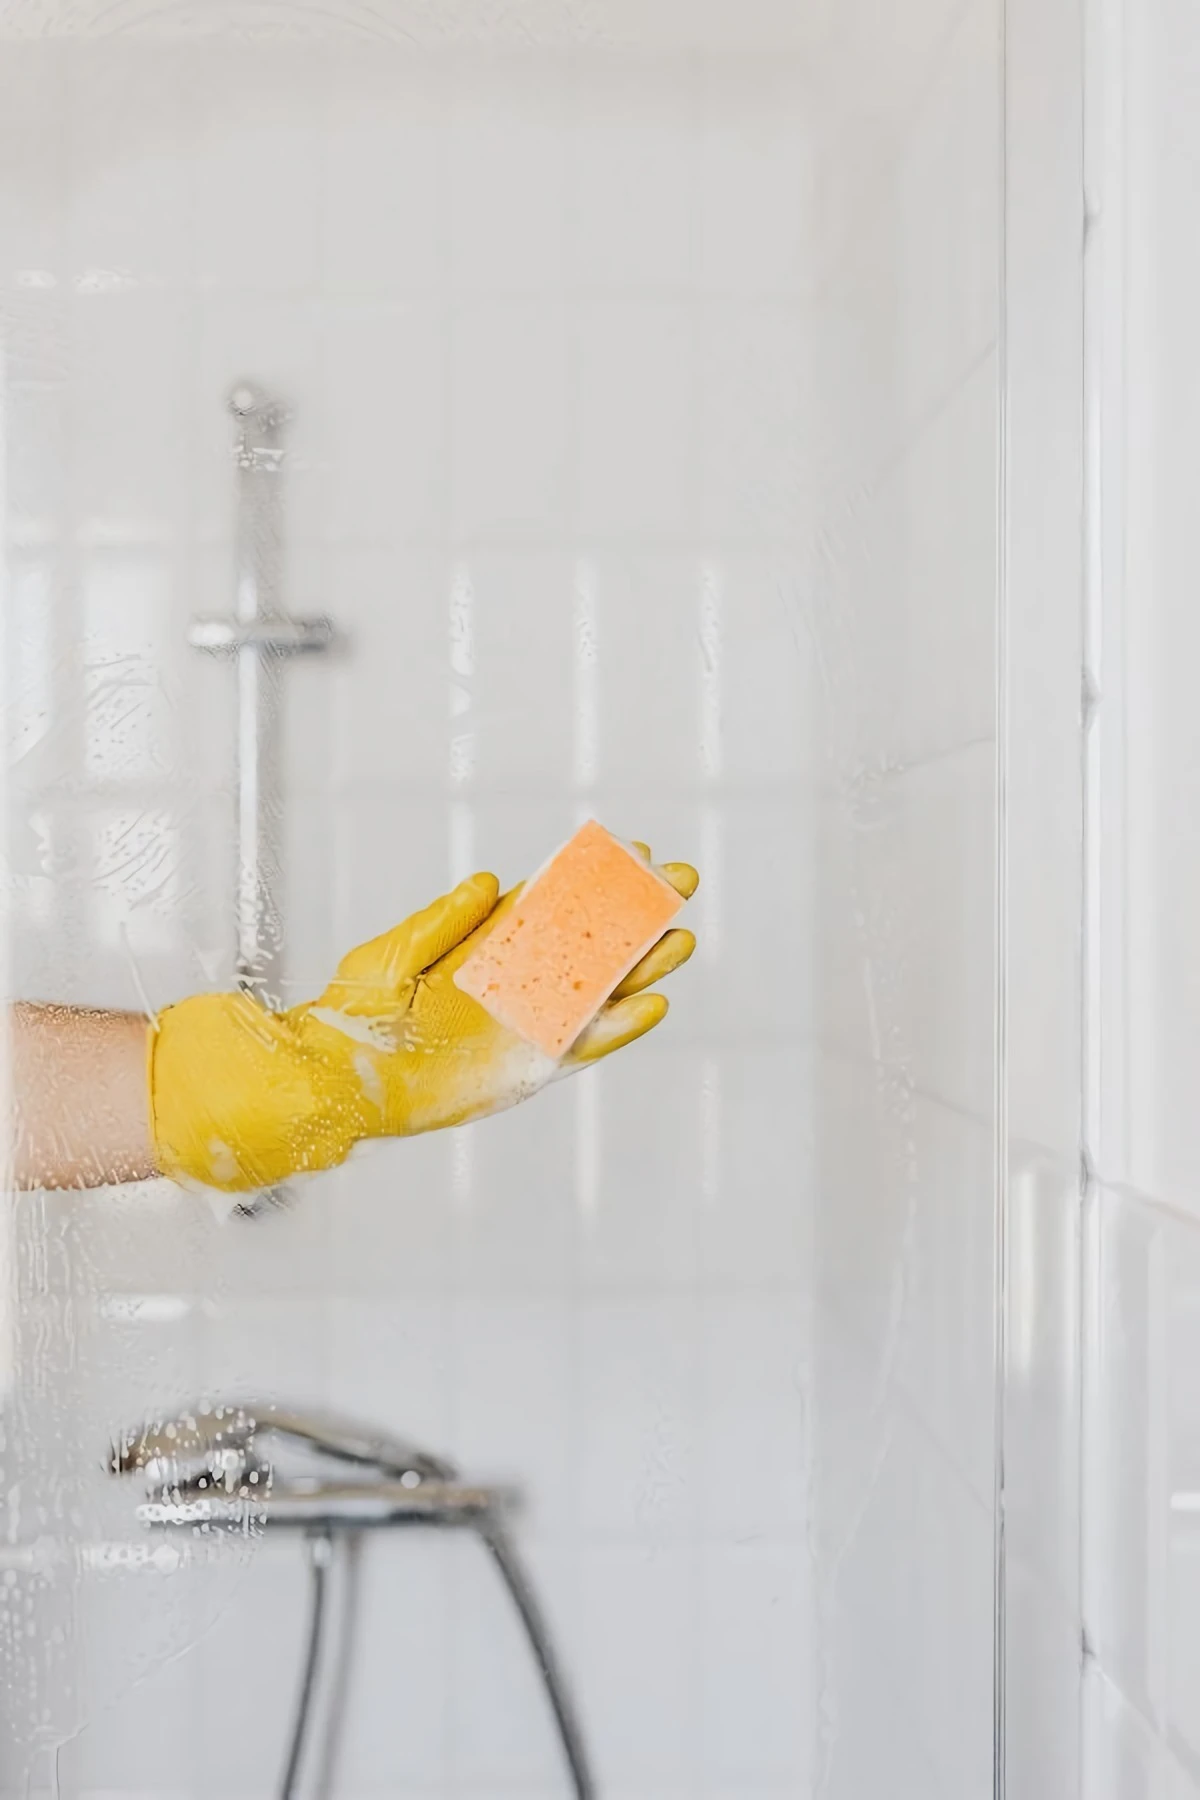 scrubbing shower door with sponge